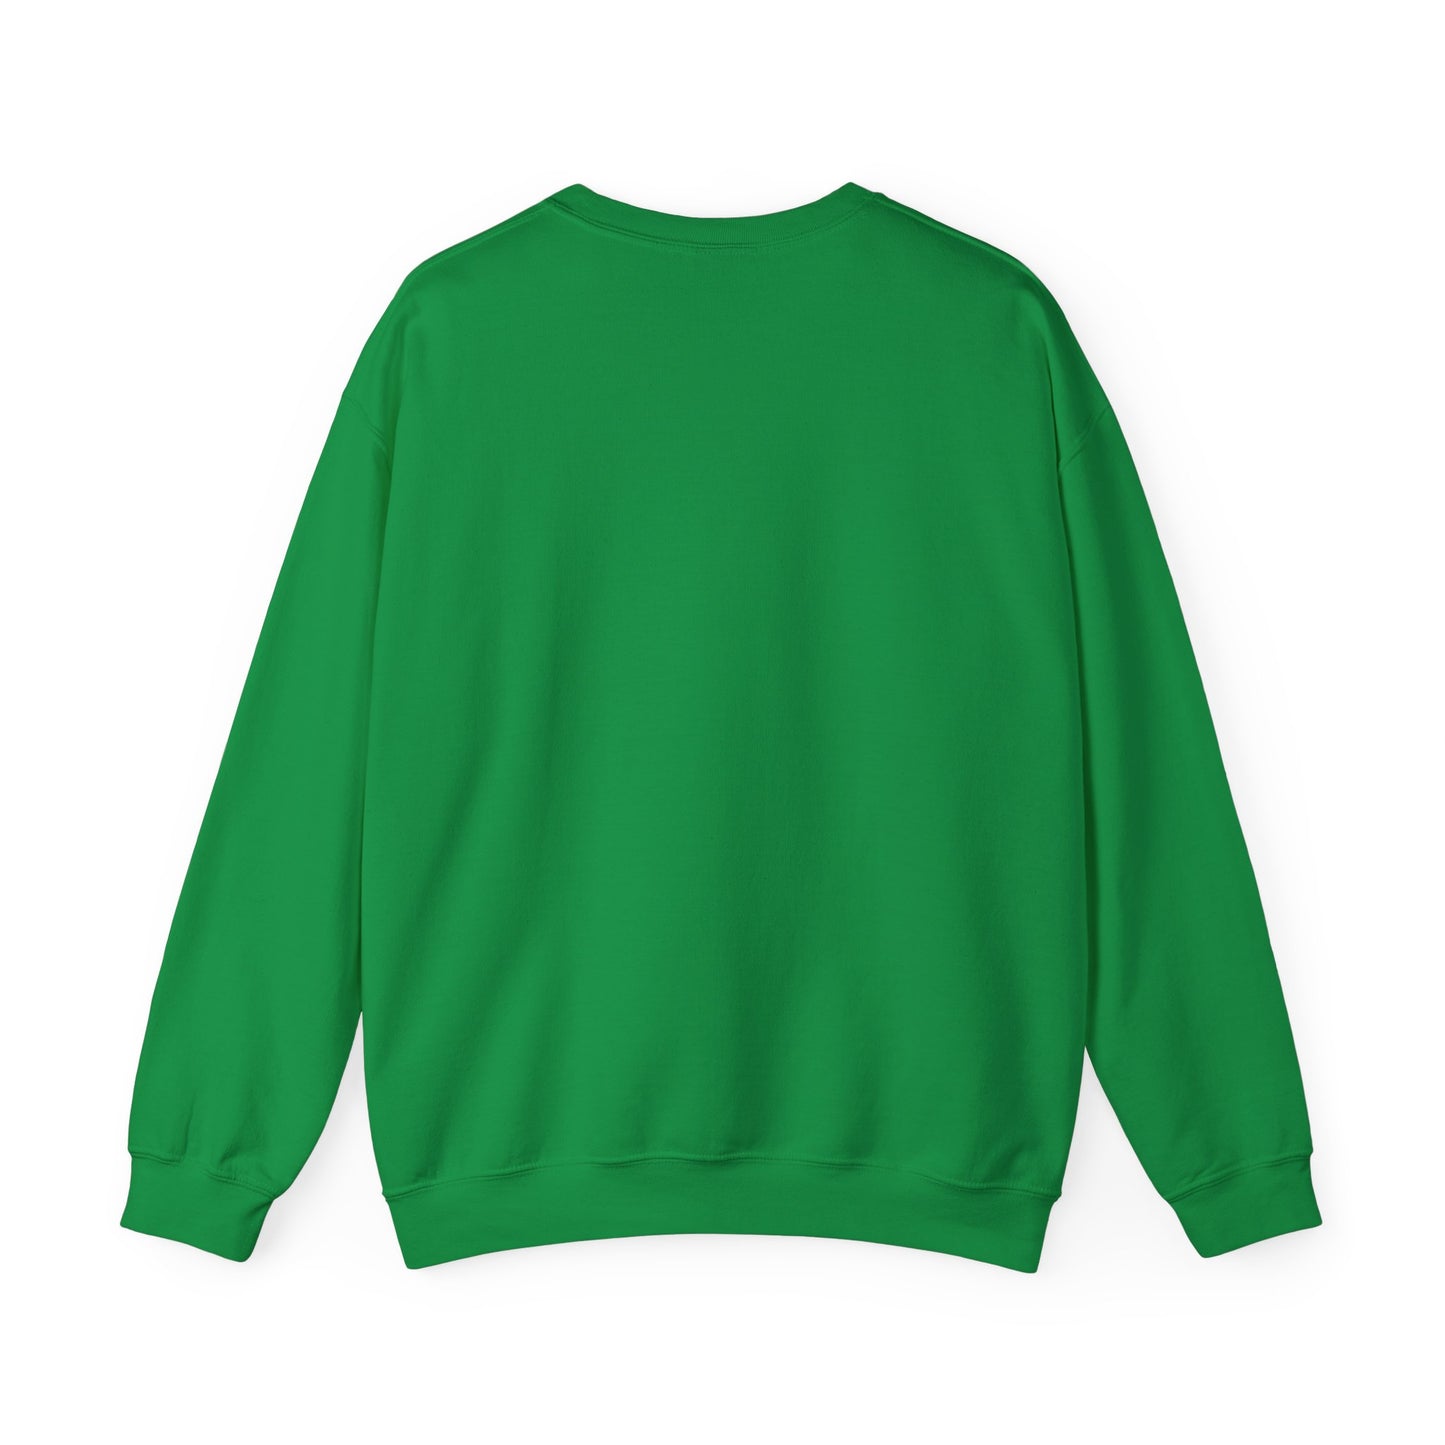 Buy Me Weed Unisex Crewneck Sweatshirt